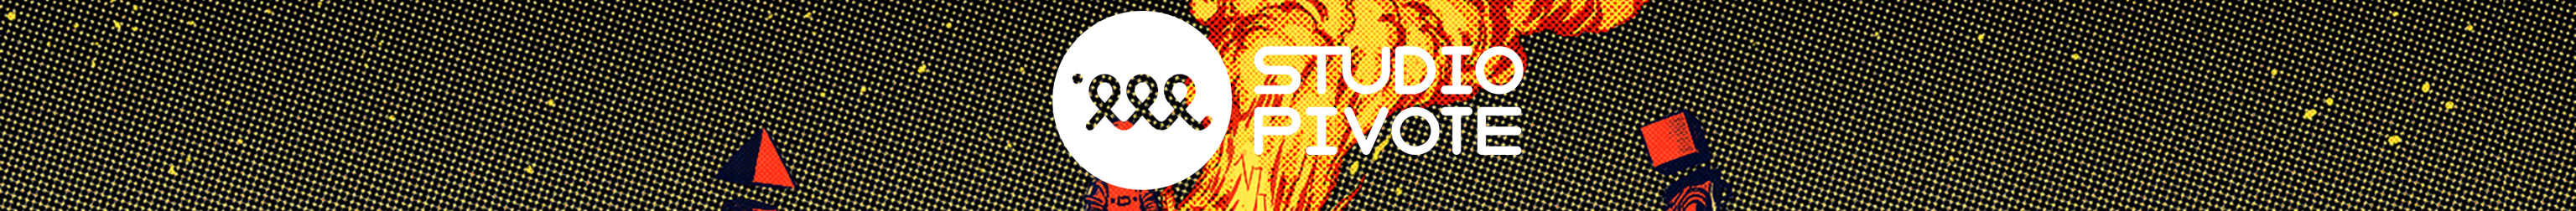 Studio Pivote's profile banner